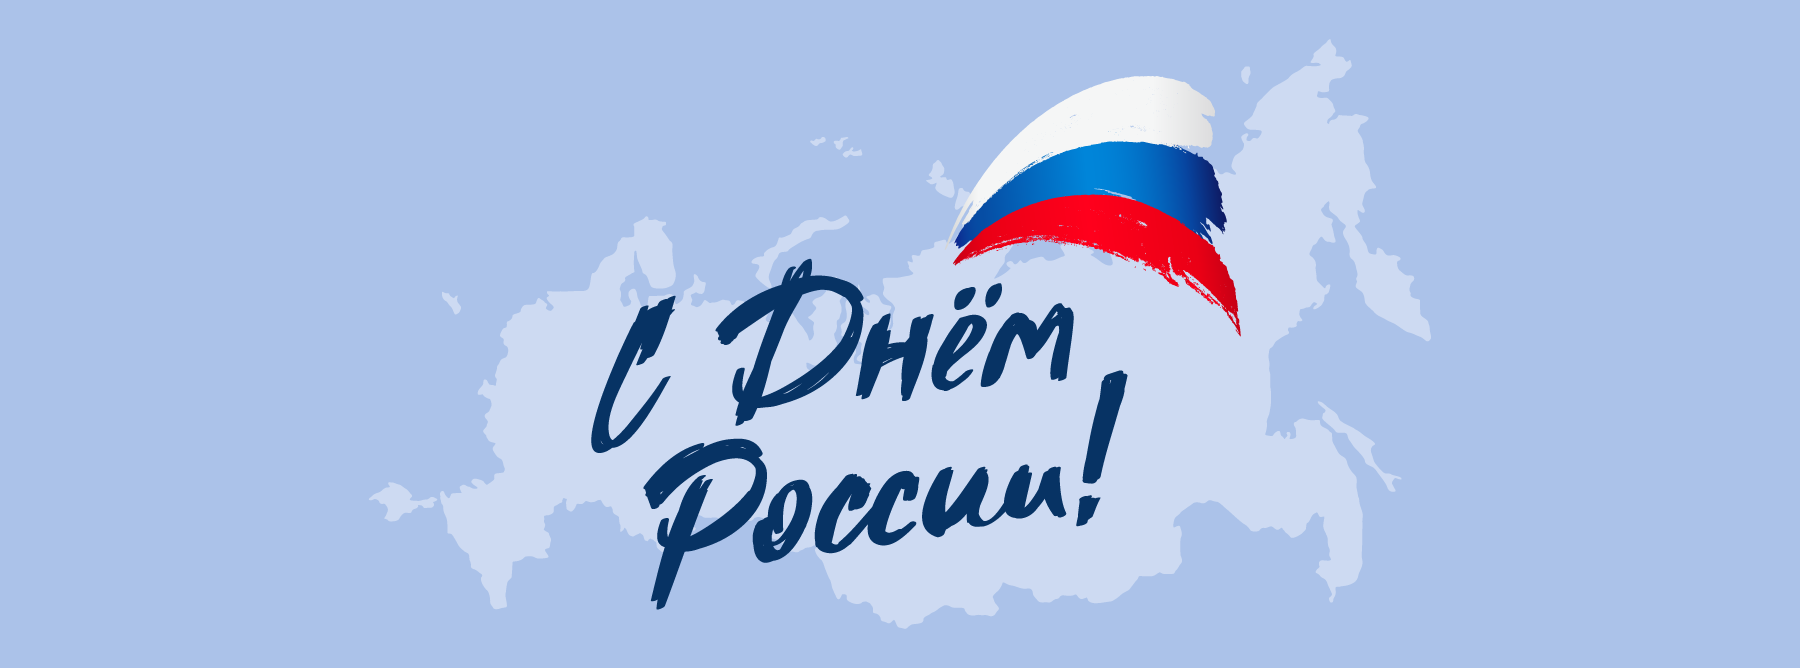 Поздравляем с наступающим праздником - Днем России!